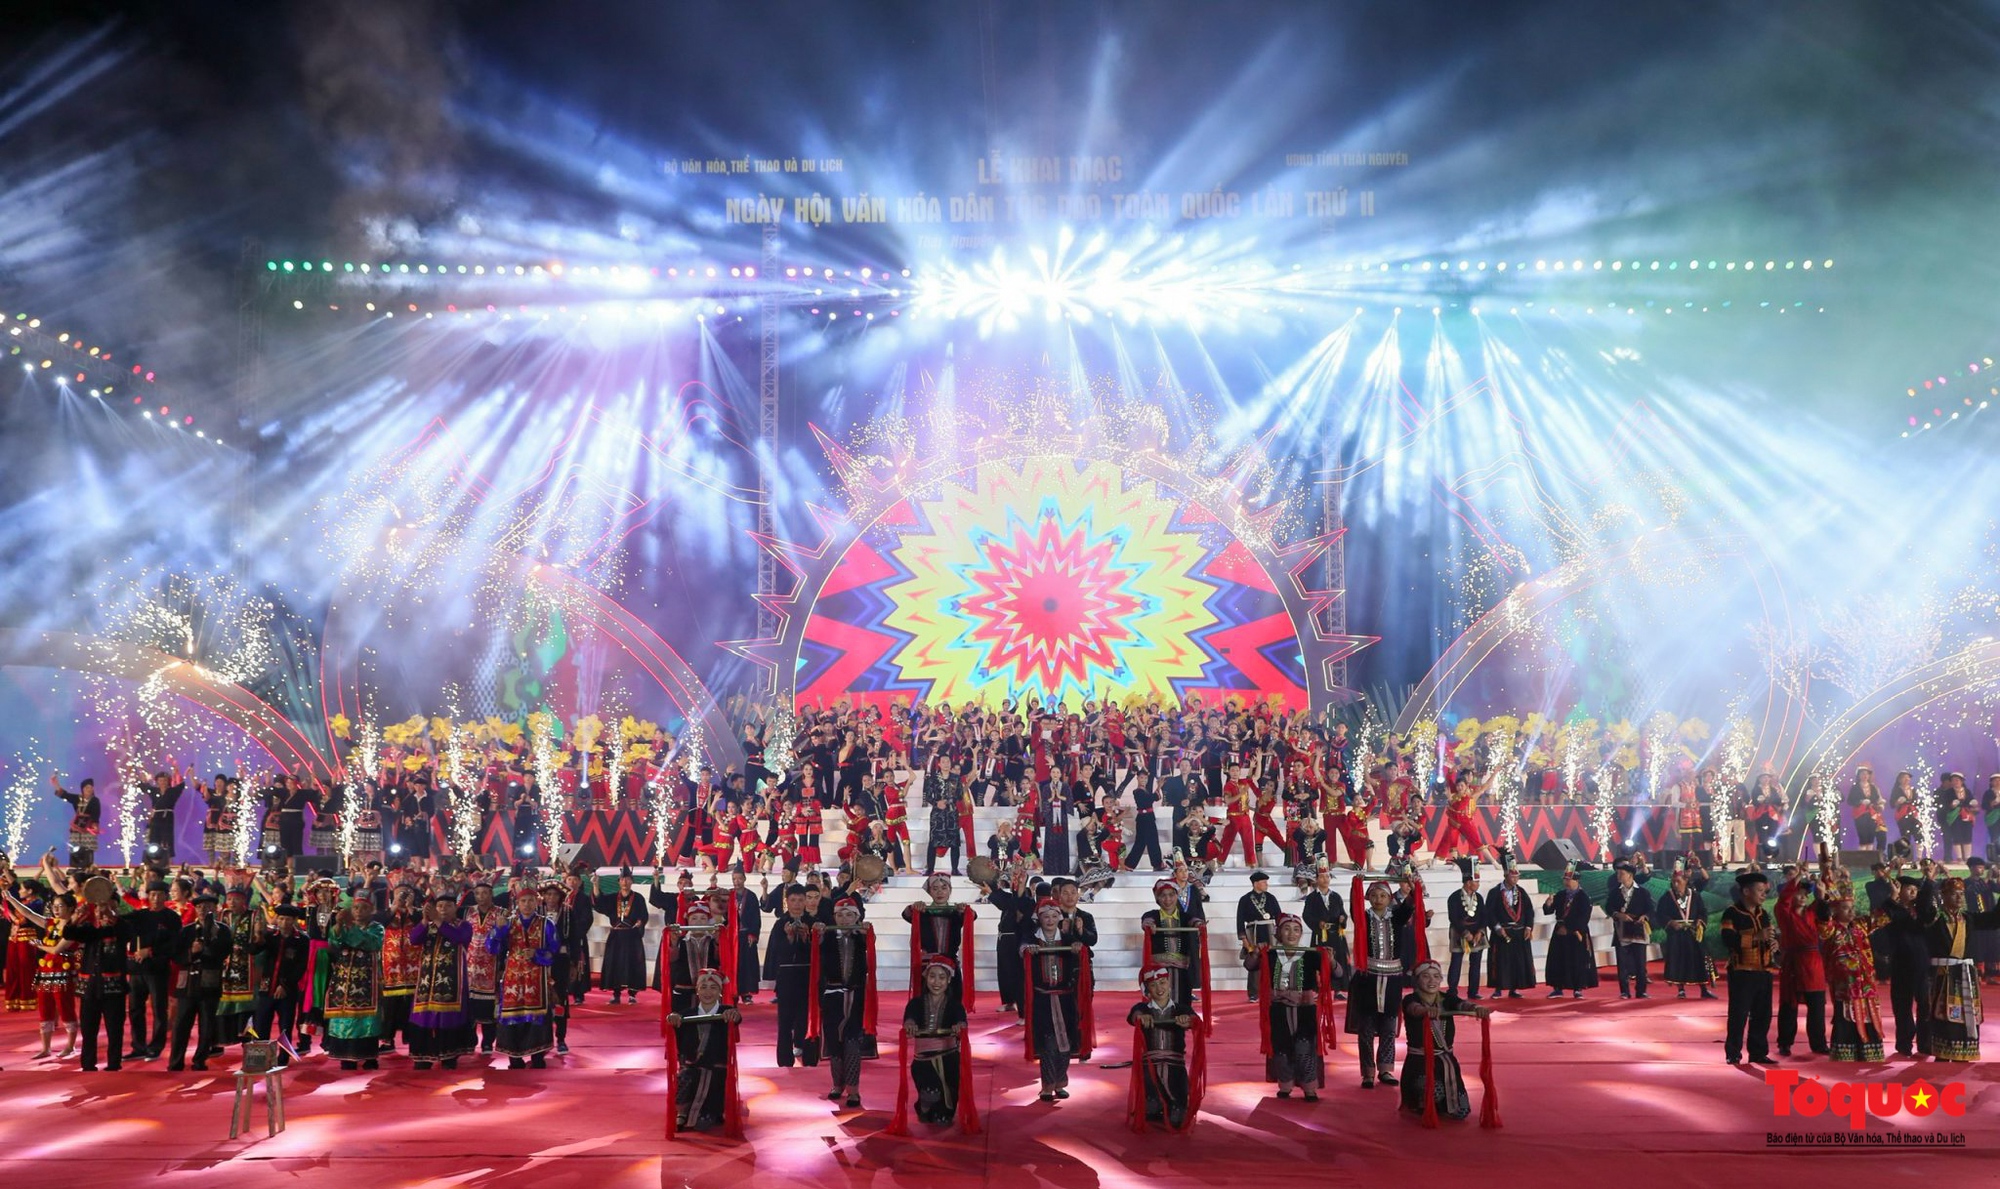 Chùm ảnh: Khai mạc Ngày hội Văn hóa dân tộc Dao toàn quốc lần thứ II năm 2022 - Ảnh 21.